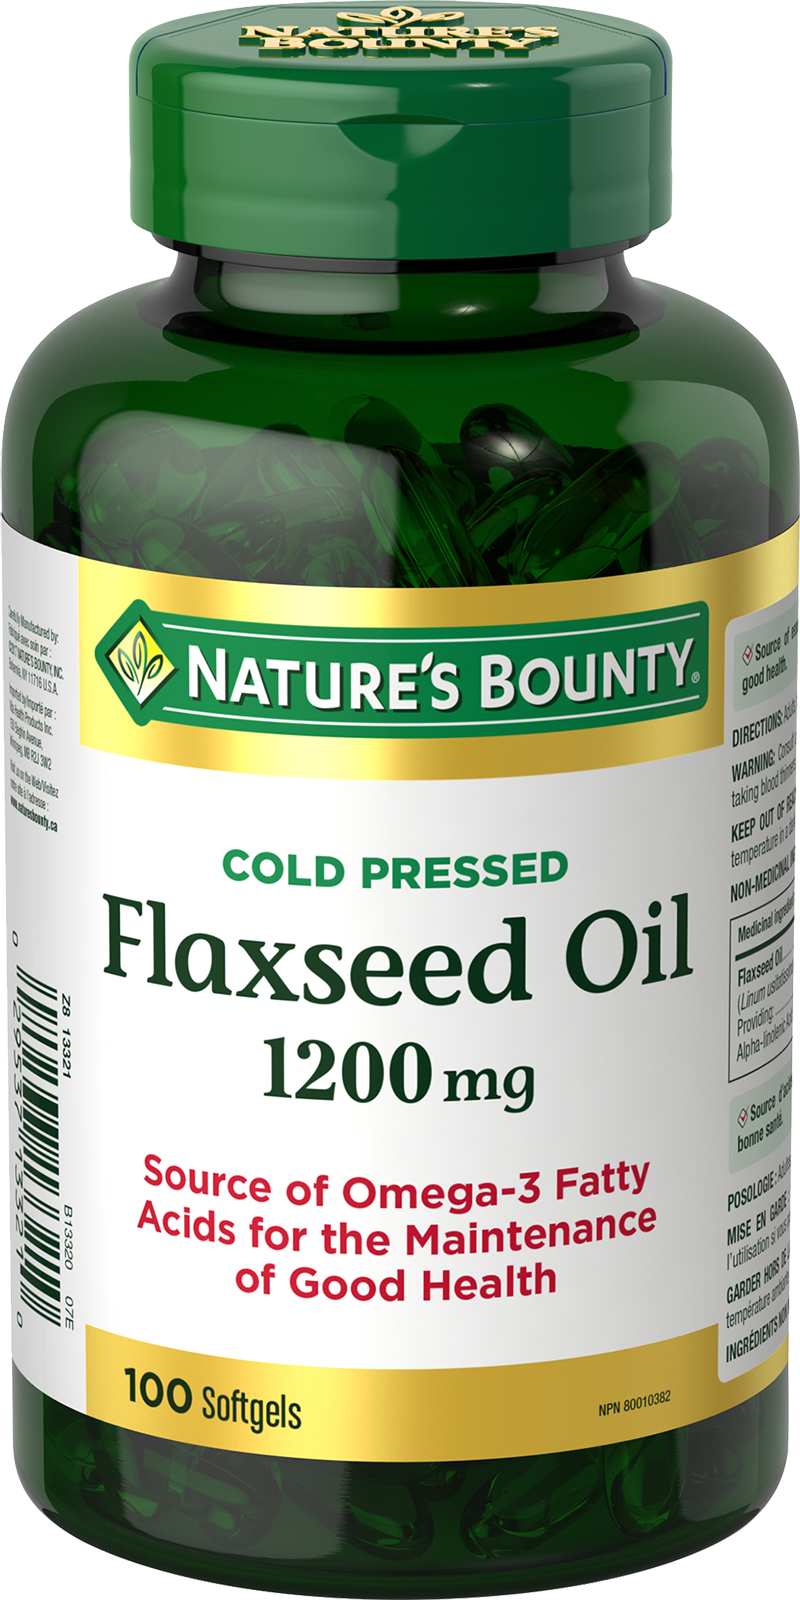  Flaxseed Oil